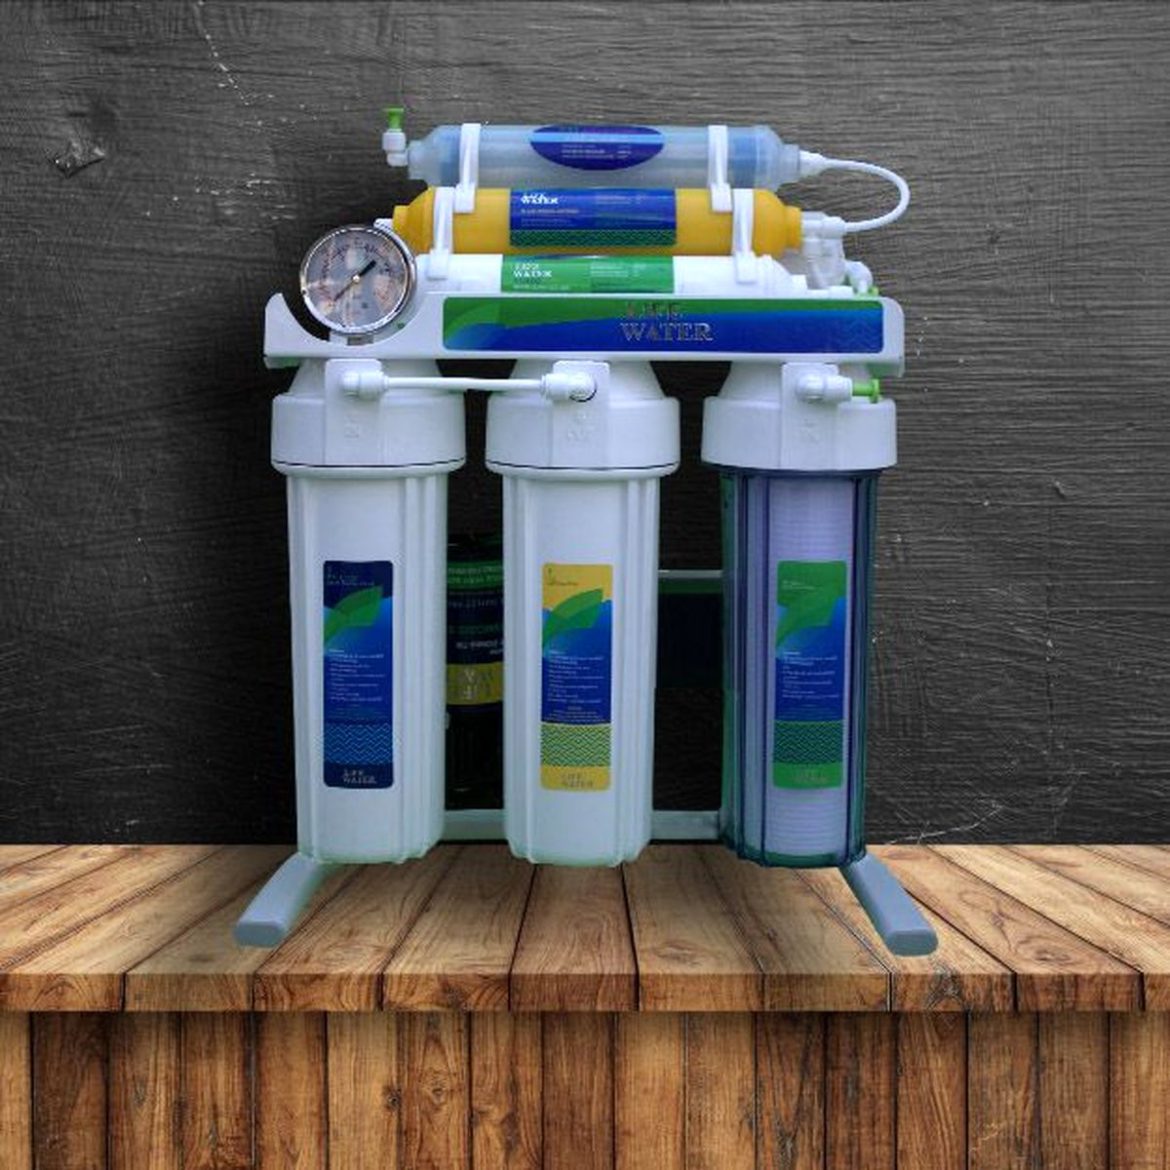 دستگاه تصفیه آب خانگی بدون برق که از قدرت اشعه ماوراء بنفش برای ضد عفونی کردن آب استفاده میکند!